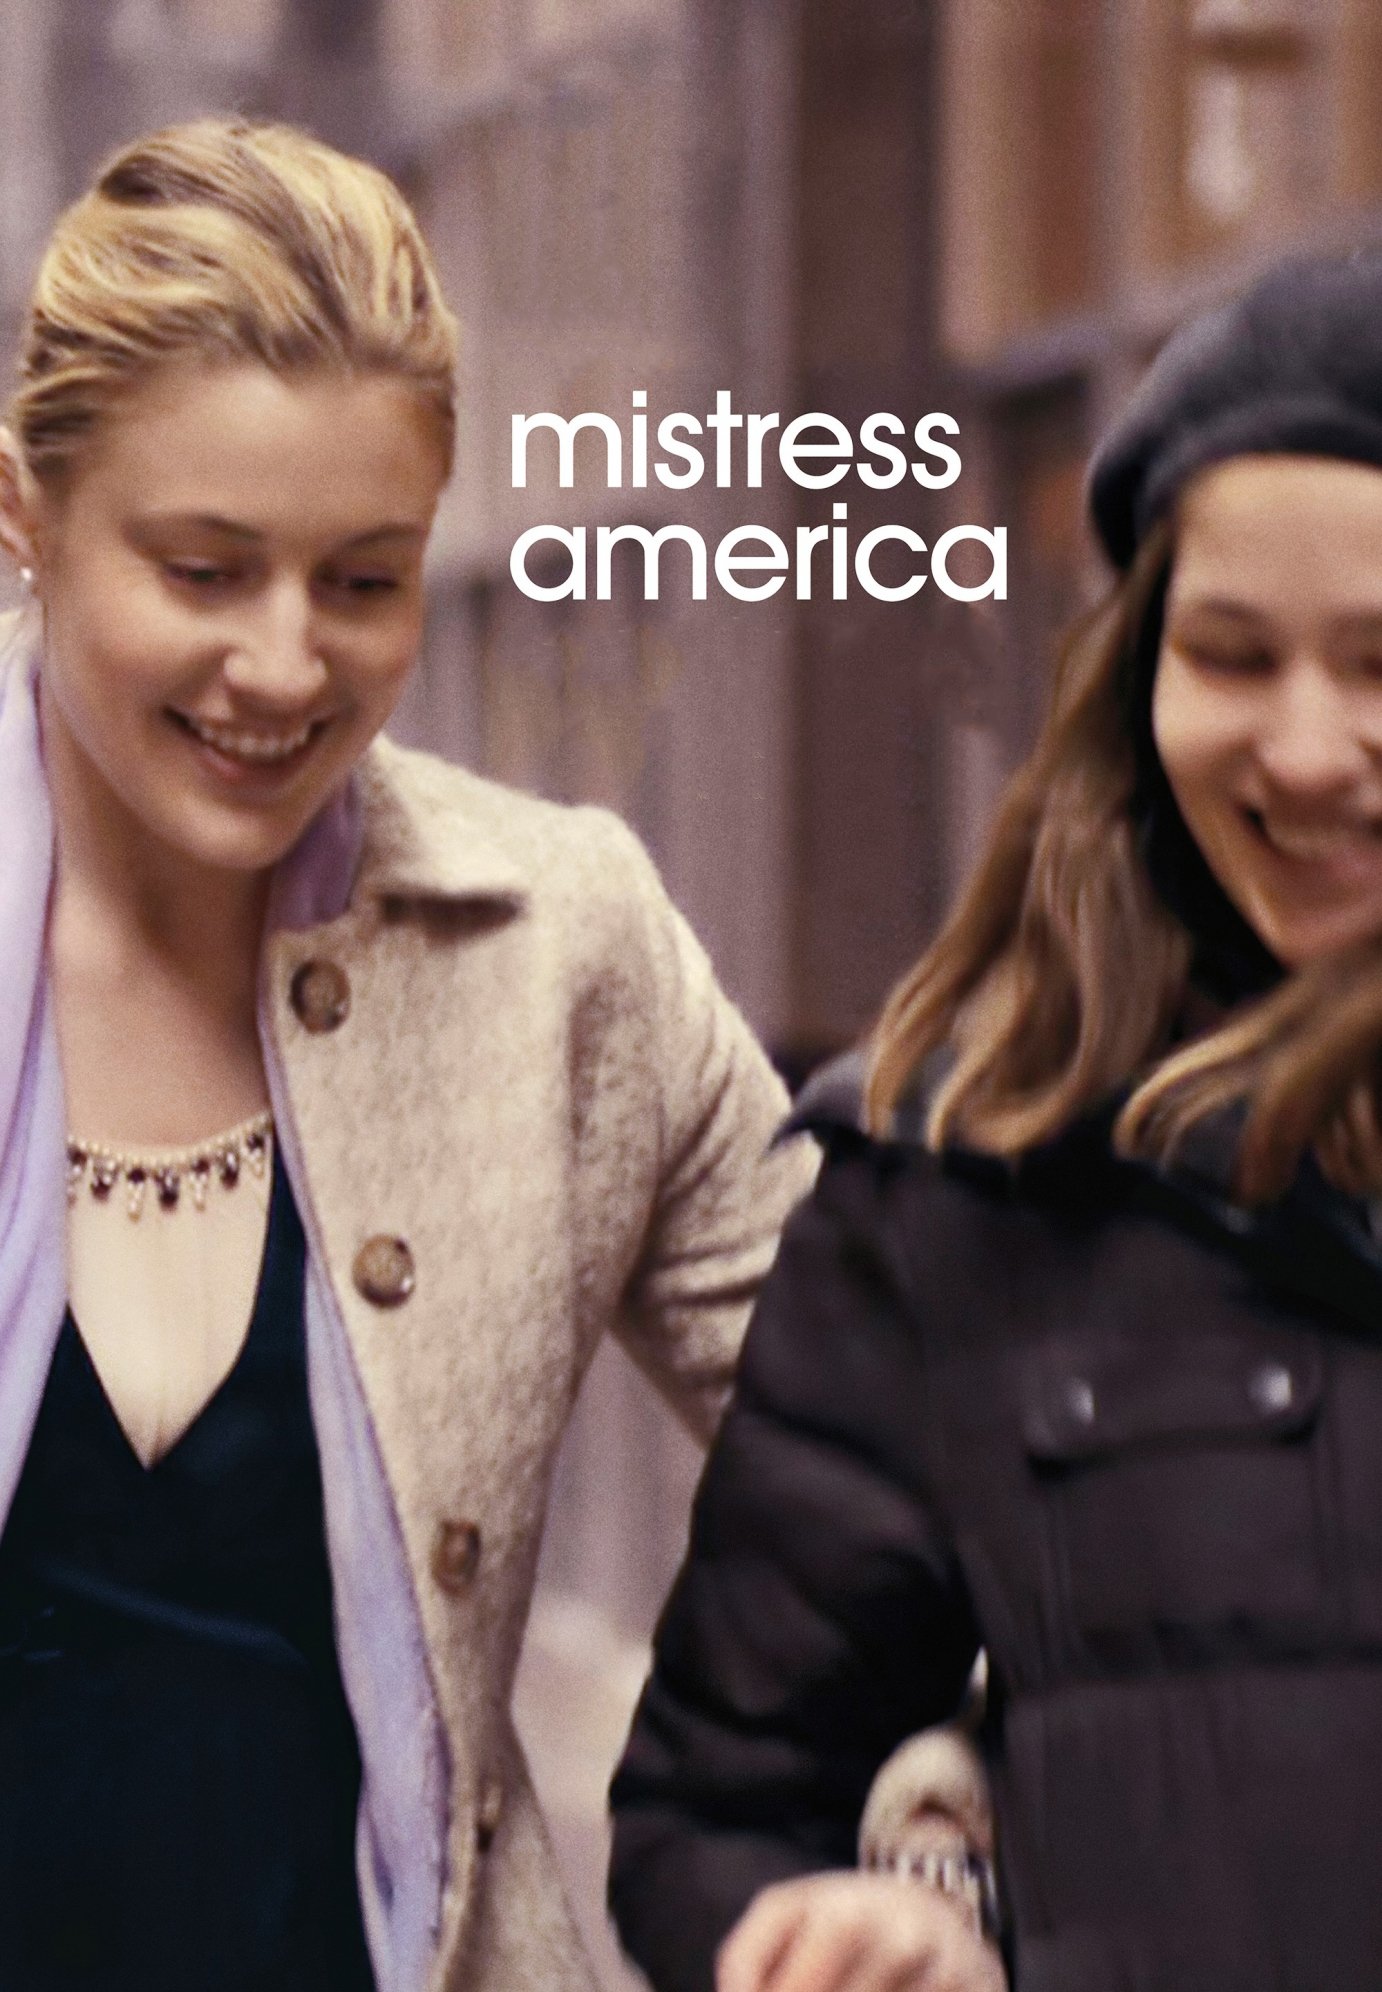 Plakat von "Mistress America"